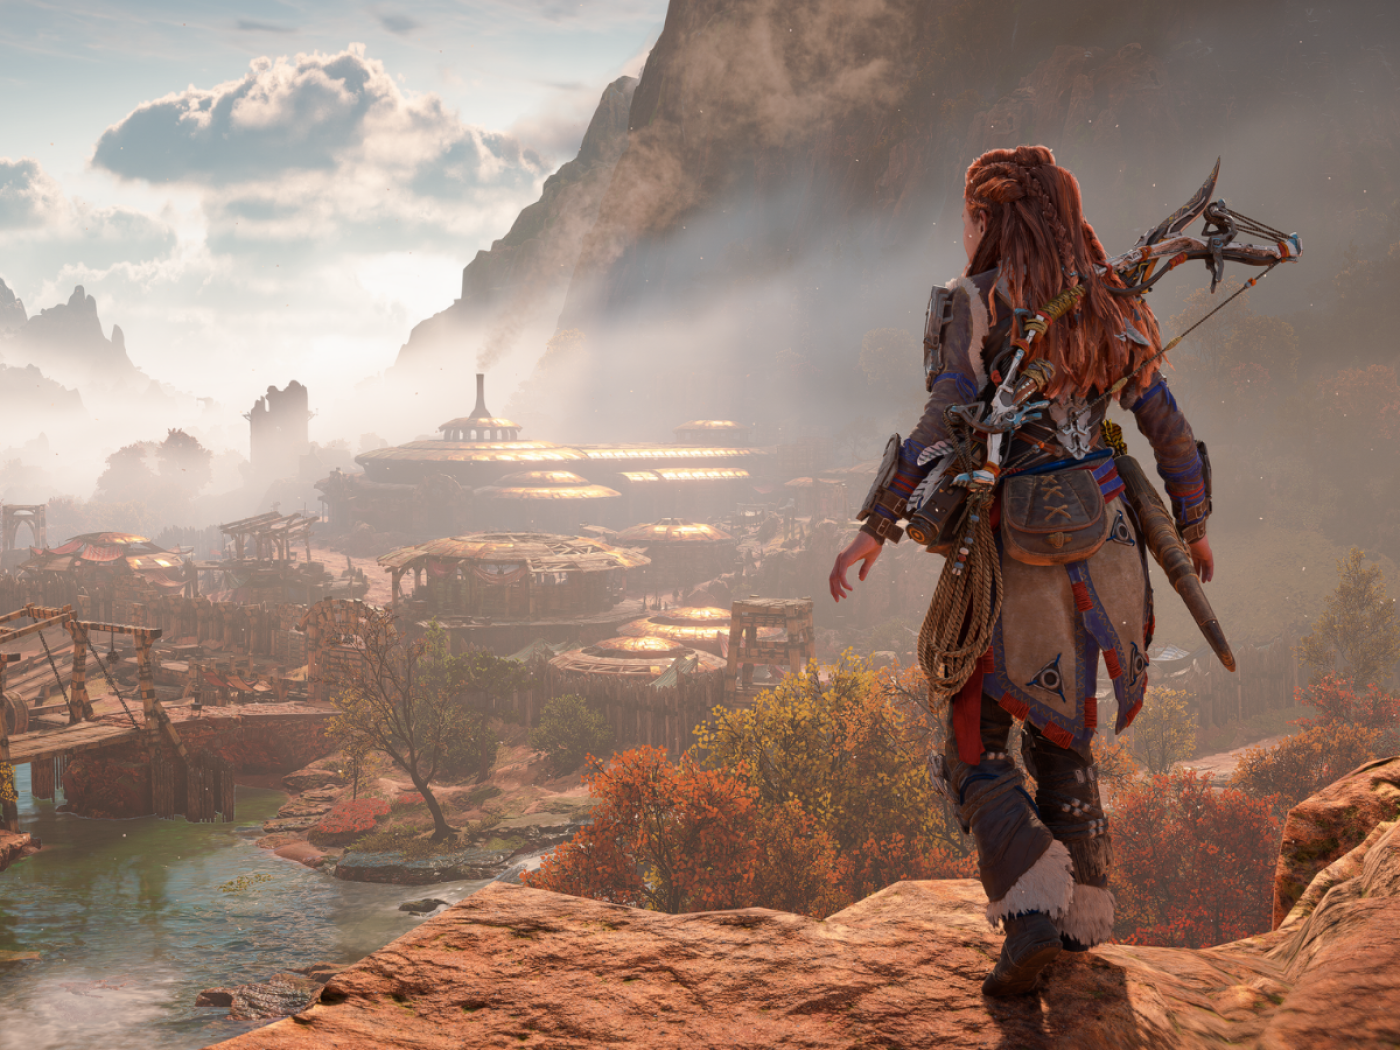 Horizon Forbidden West: Release date, platforms, gameplay, trailer